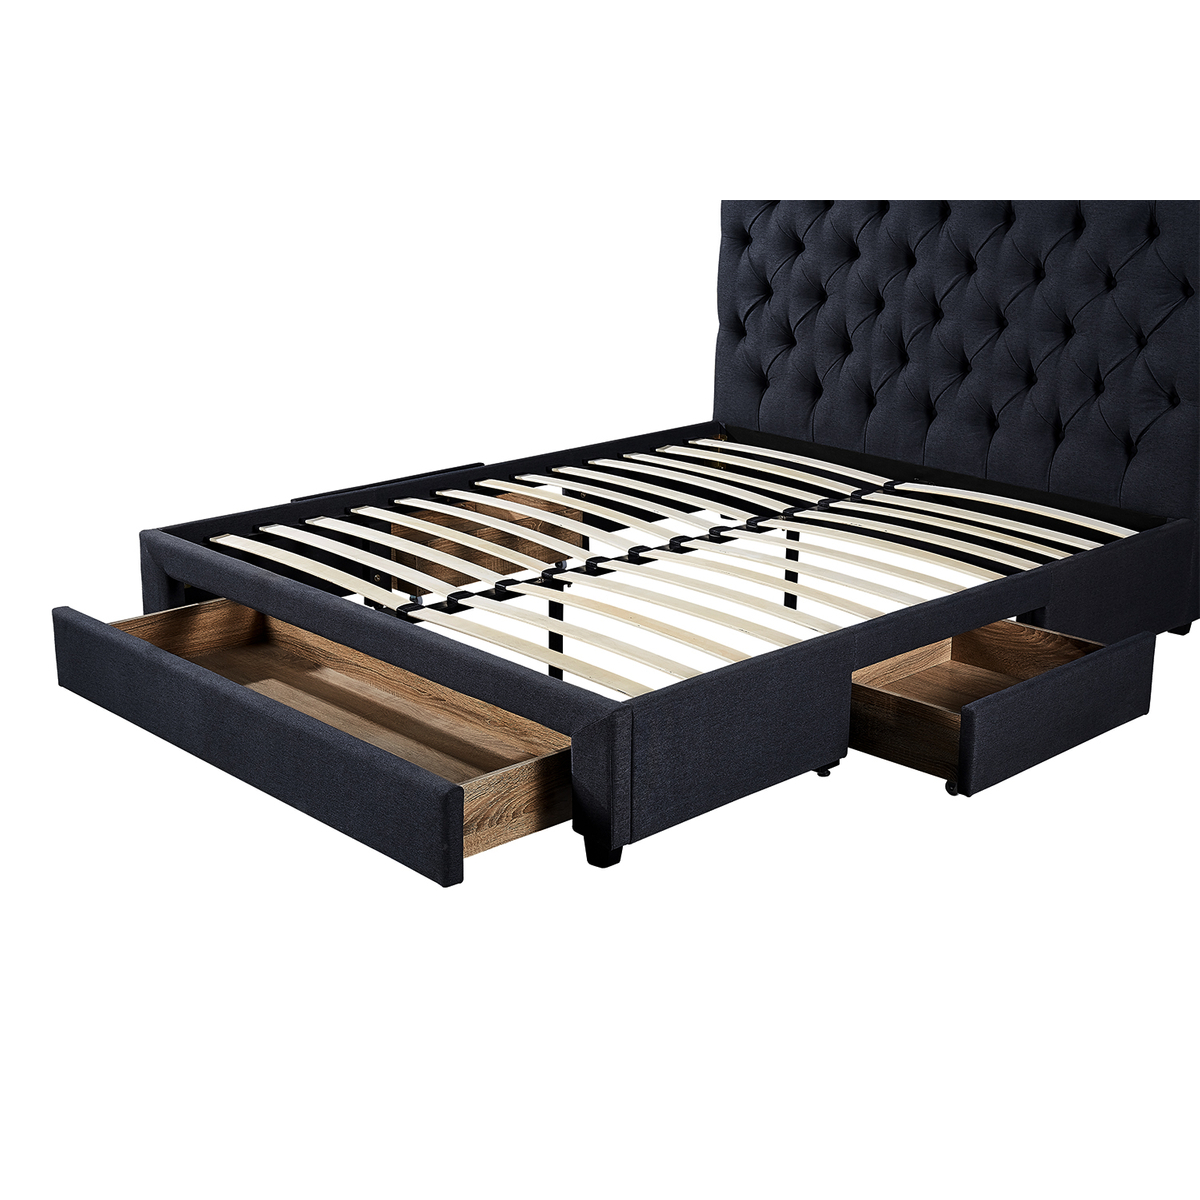  Interiax Dex Bed - Comfort inclusief 3 schuiven in Grijs met lattenbodem (160 x 200 cm) 